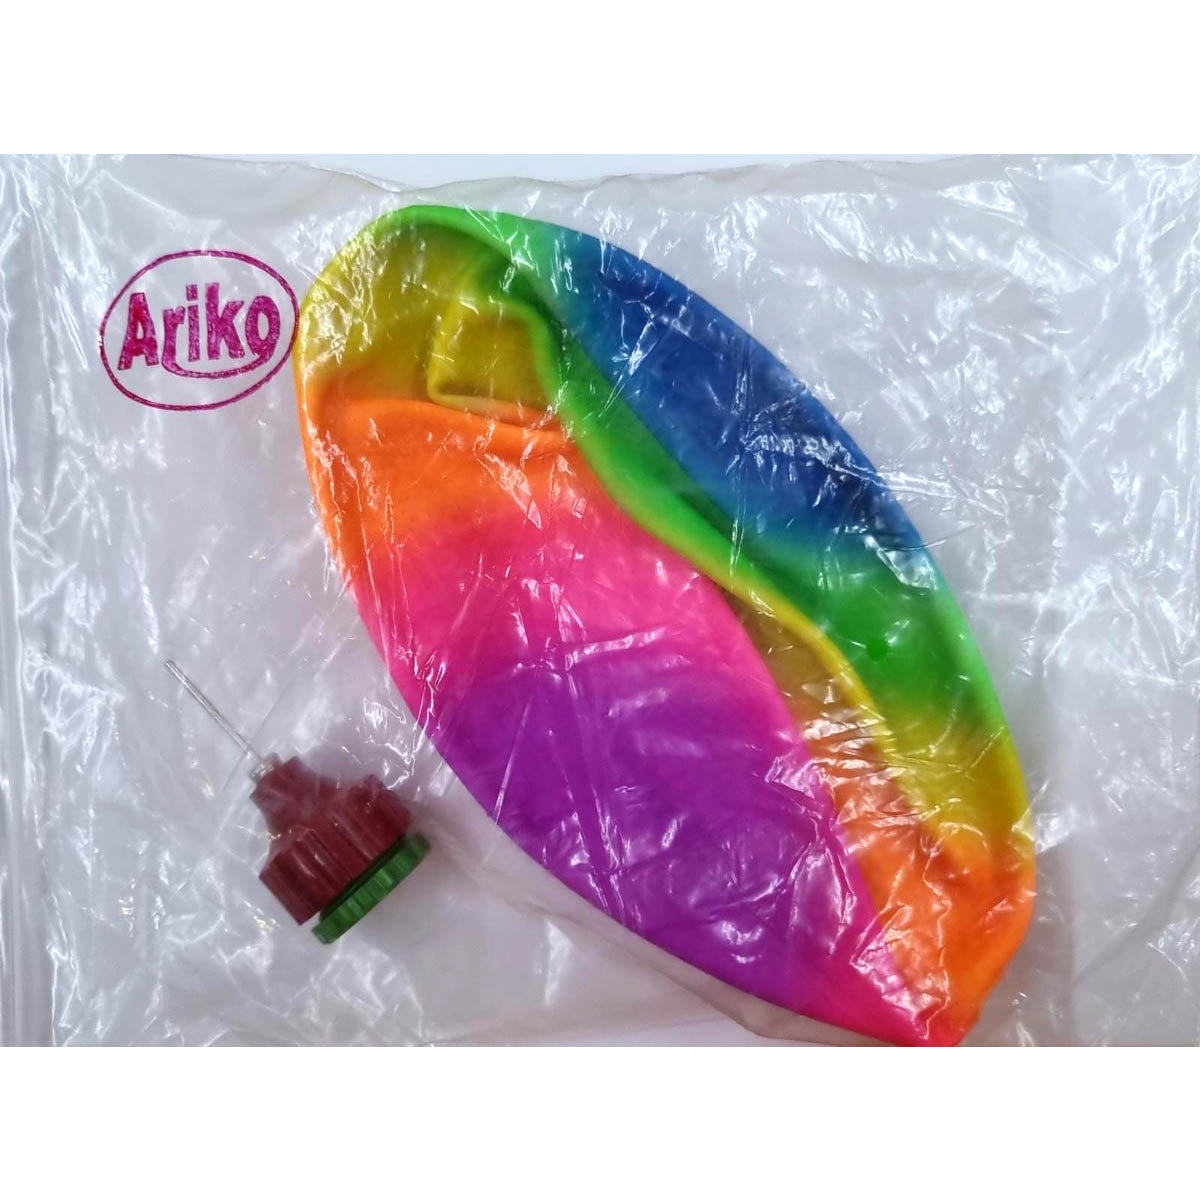 Ariko robuster Unterwasserball XXL | Unter Wasserball | Zum Befüllen mit Wasser oder Luft | Wasserball | Inklusive Wasserfüller | 22,8cm | mehrfarbig | Wassermelonenkugel